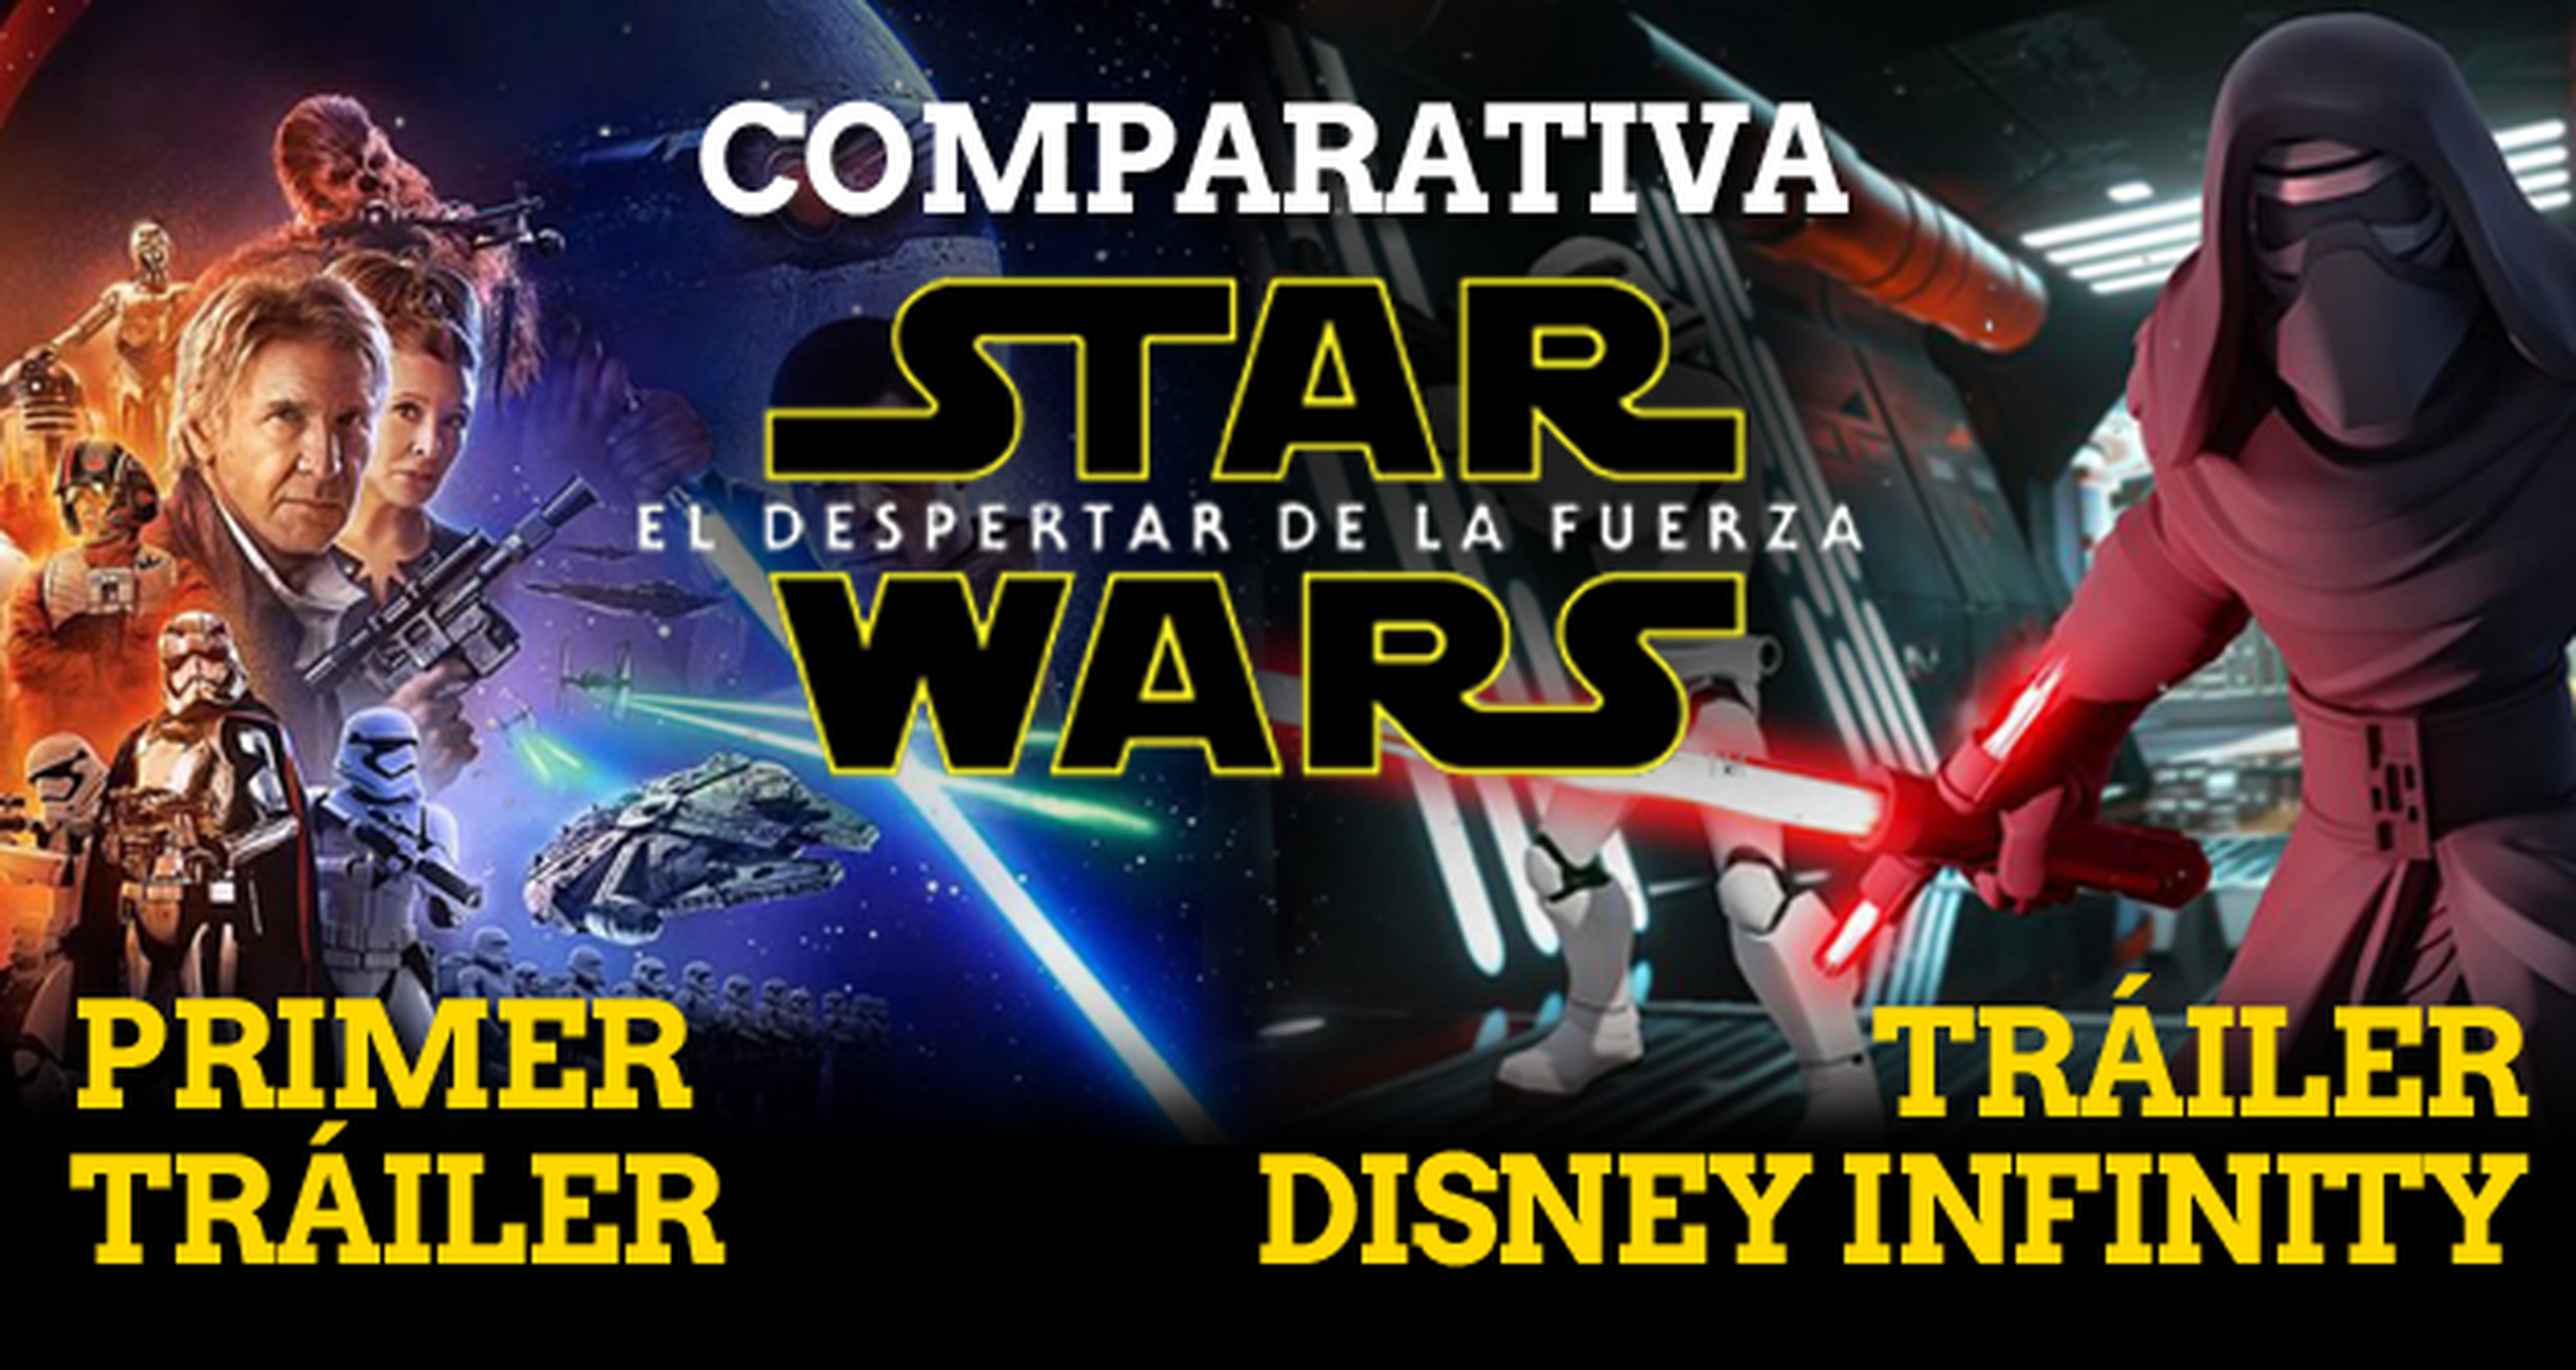 Star Wars Episodio VII El Despertar de la Fuerza: Disney Infinity 3.0 vs película